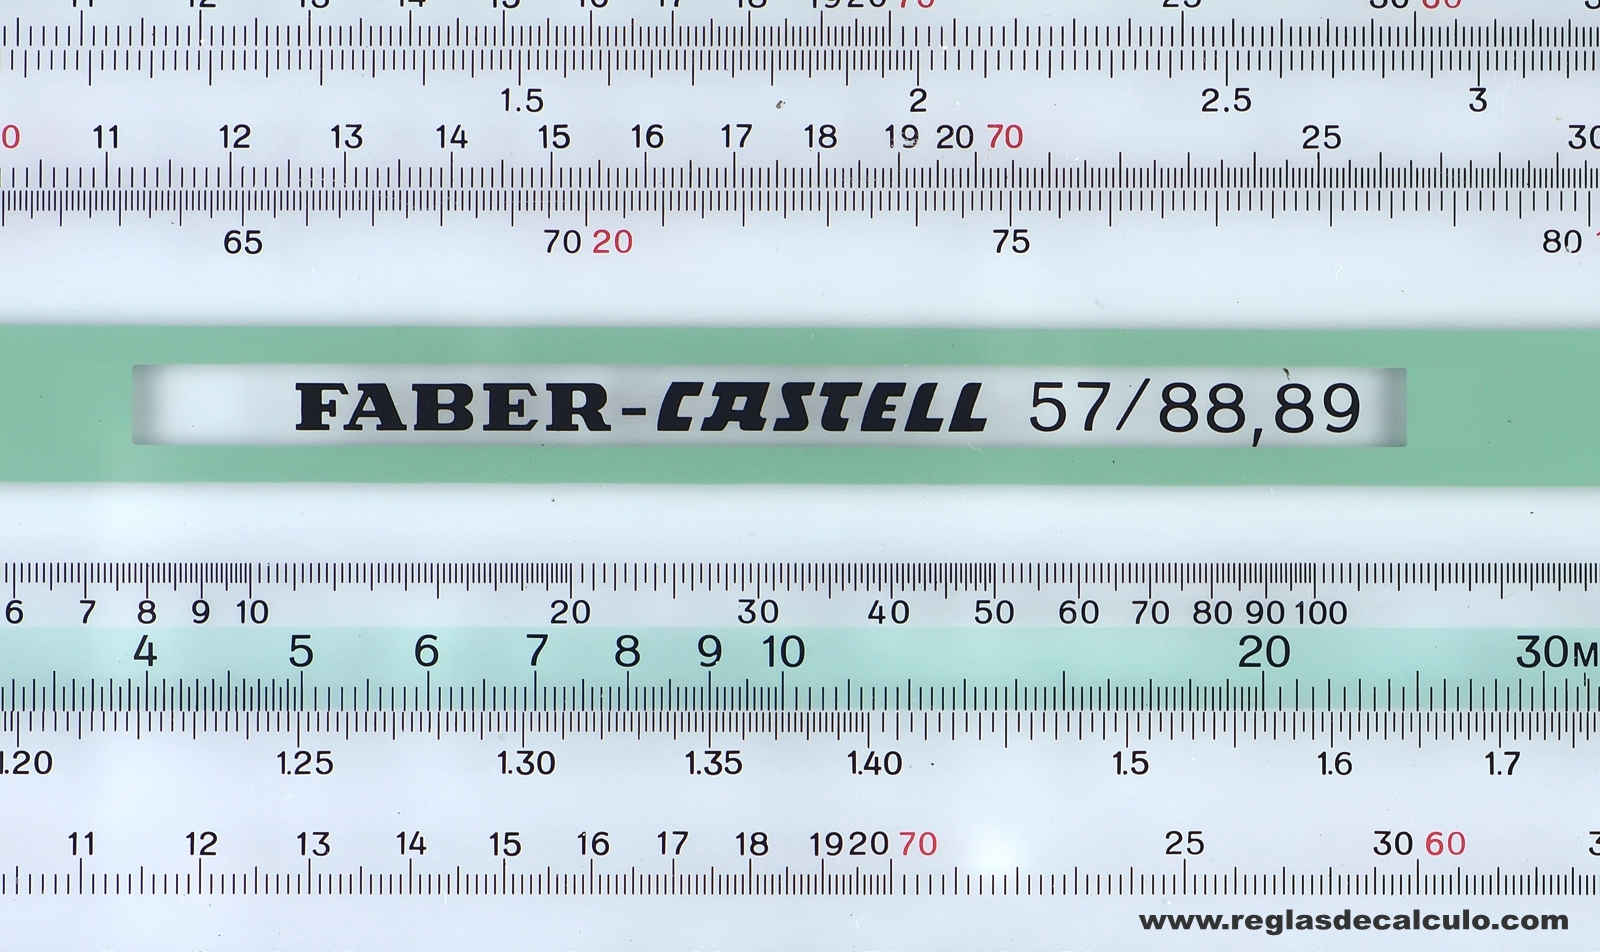 Faber Castell 310/88,89 Proyección Regla de Calculo Slide rule